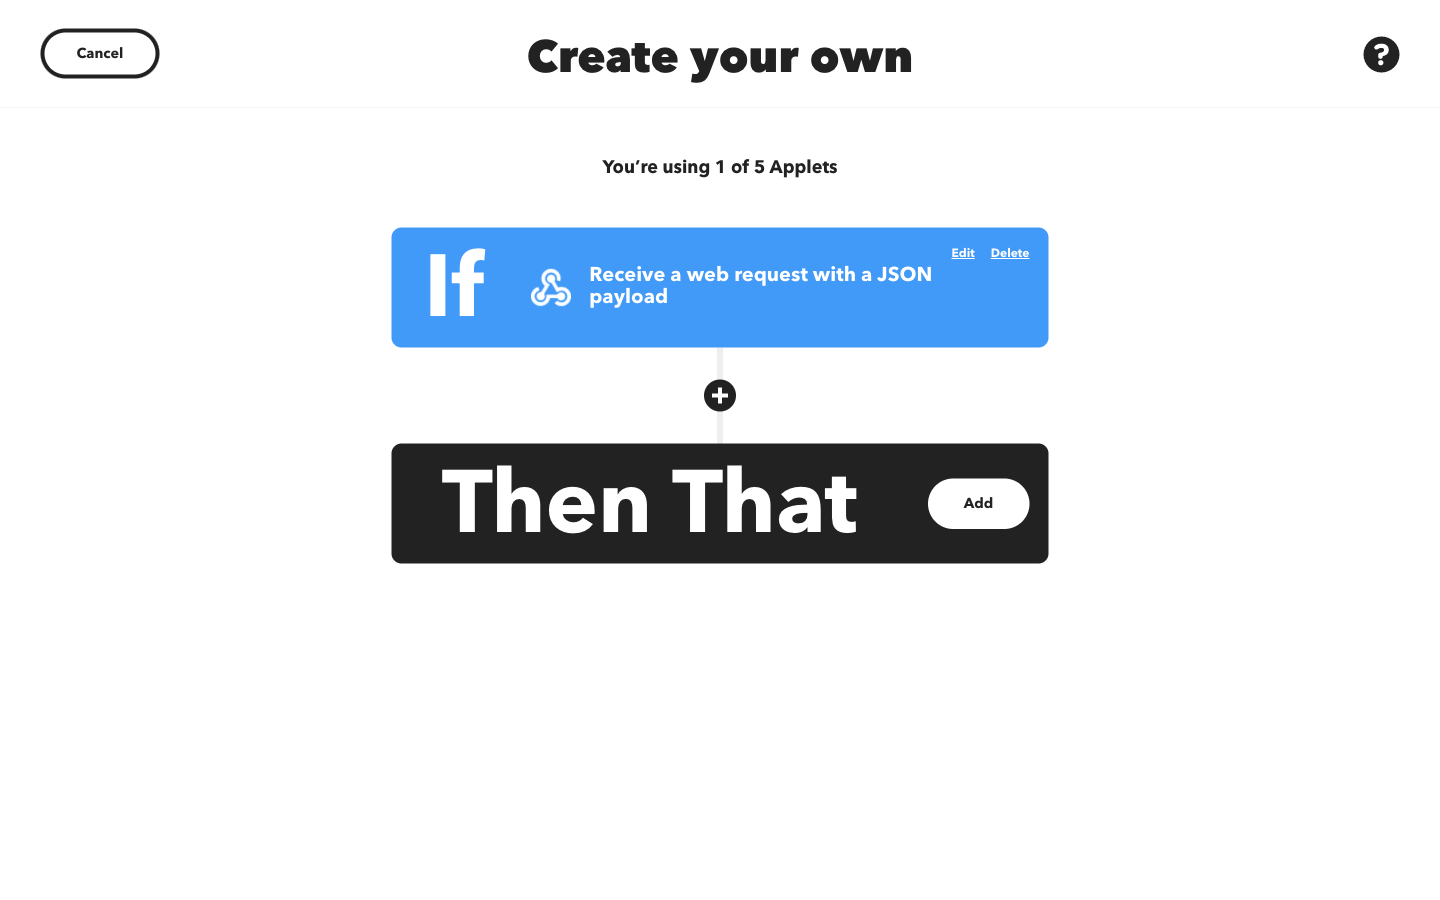 The IFTTT applet create screen